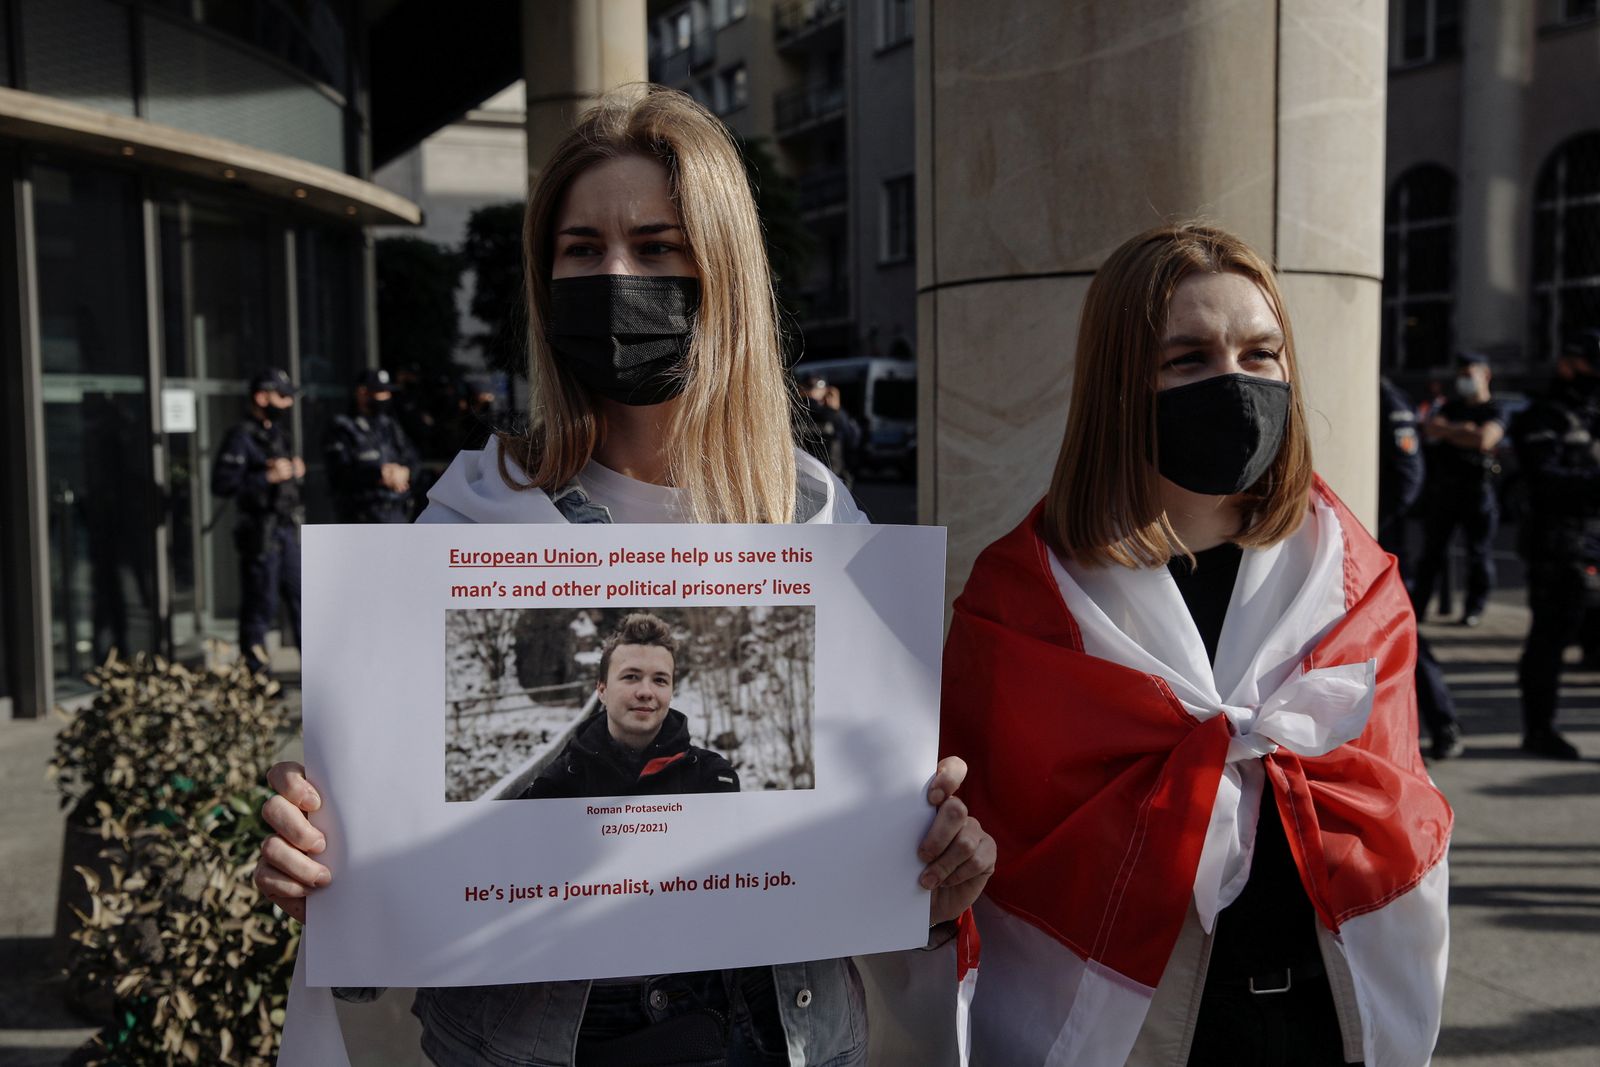 سيدتان خلال احتجاج في وارسو على اعتقال الصحافي البيلاروسي المعارض رومان بروتاسيفيتش - 24 مايو 2021 - REUTERS